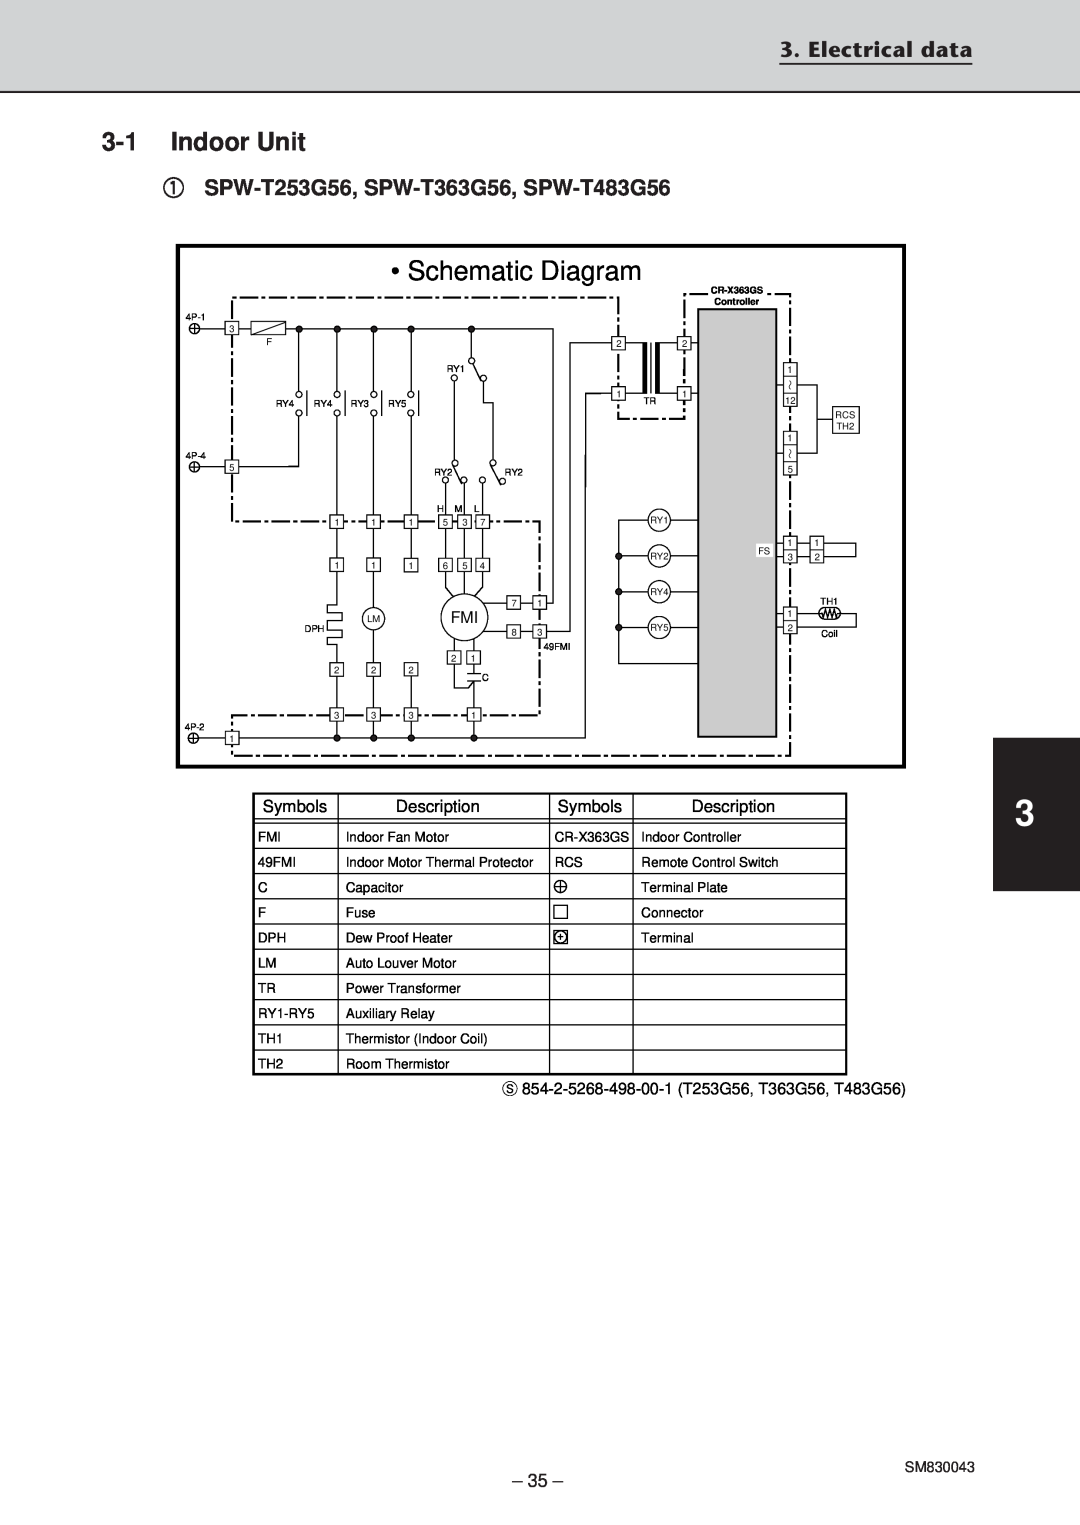 Sanyo SPW-C303G5, SPW-T363GS56, SPW-T483G56, SPW-T483GS56, SPW-C363G8 Schematic Diagram, 3-1Indoor Unit, Electrical data 